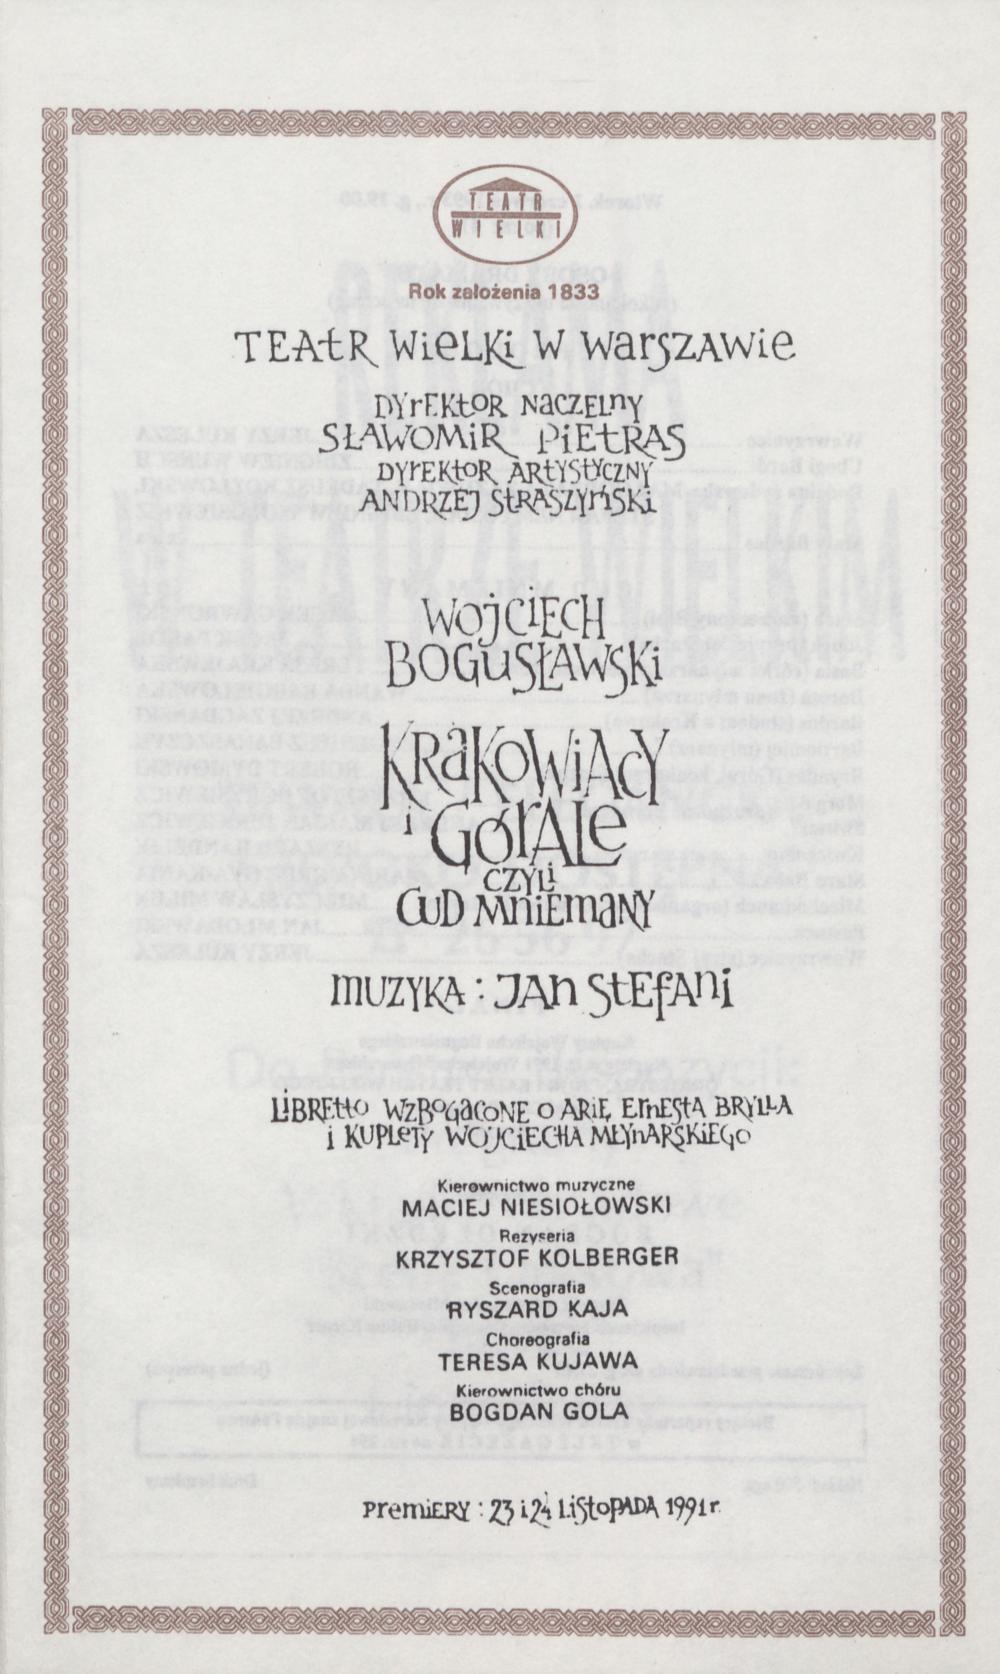 Wkładka Obsadowa.„Krakowiacy i Górale czyli Cud mniemany” Wojciech Bogusławski 01-06-1993